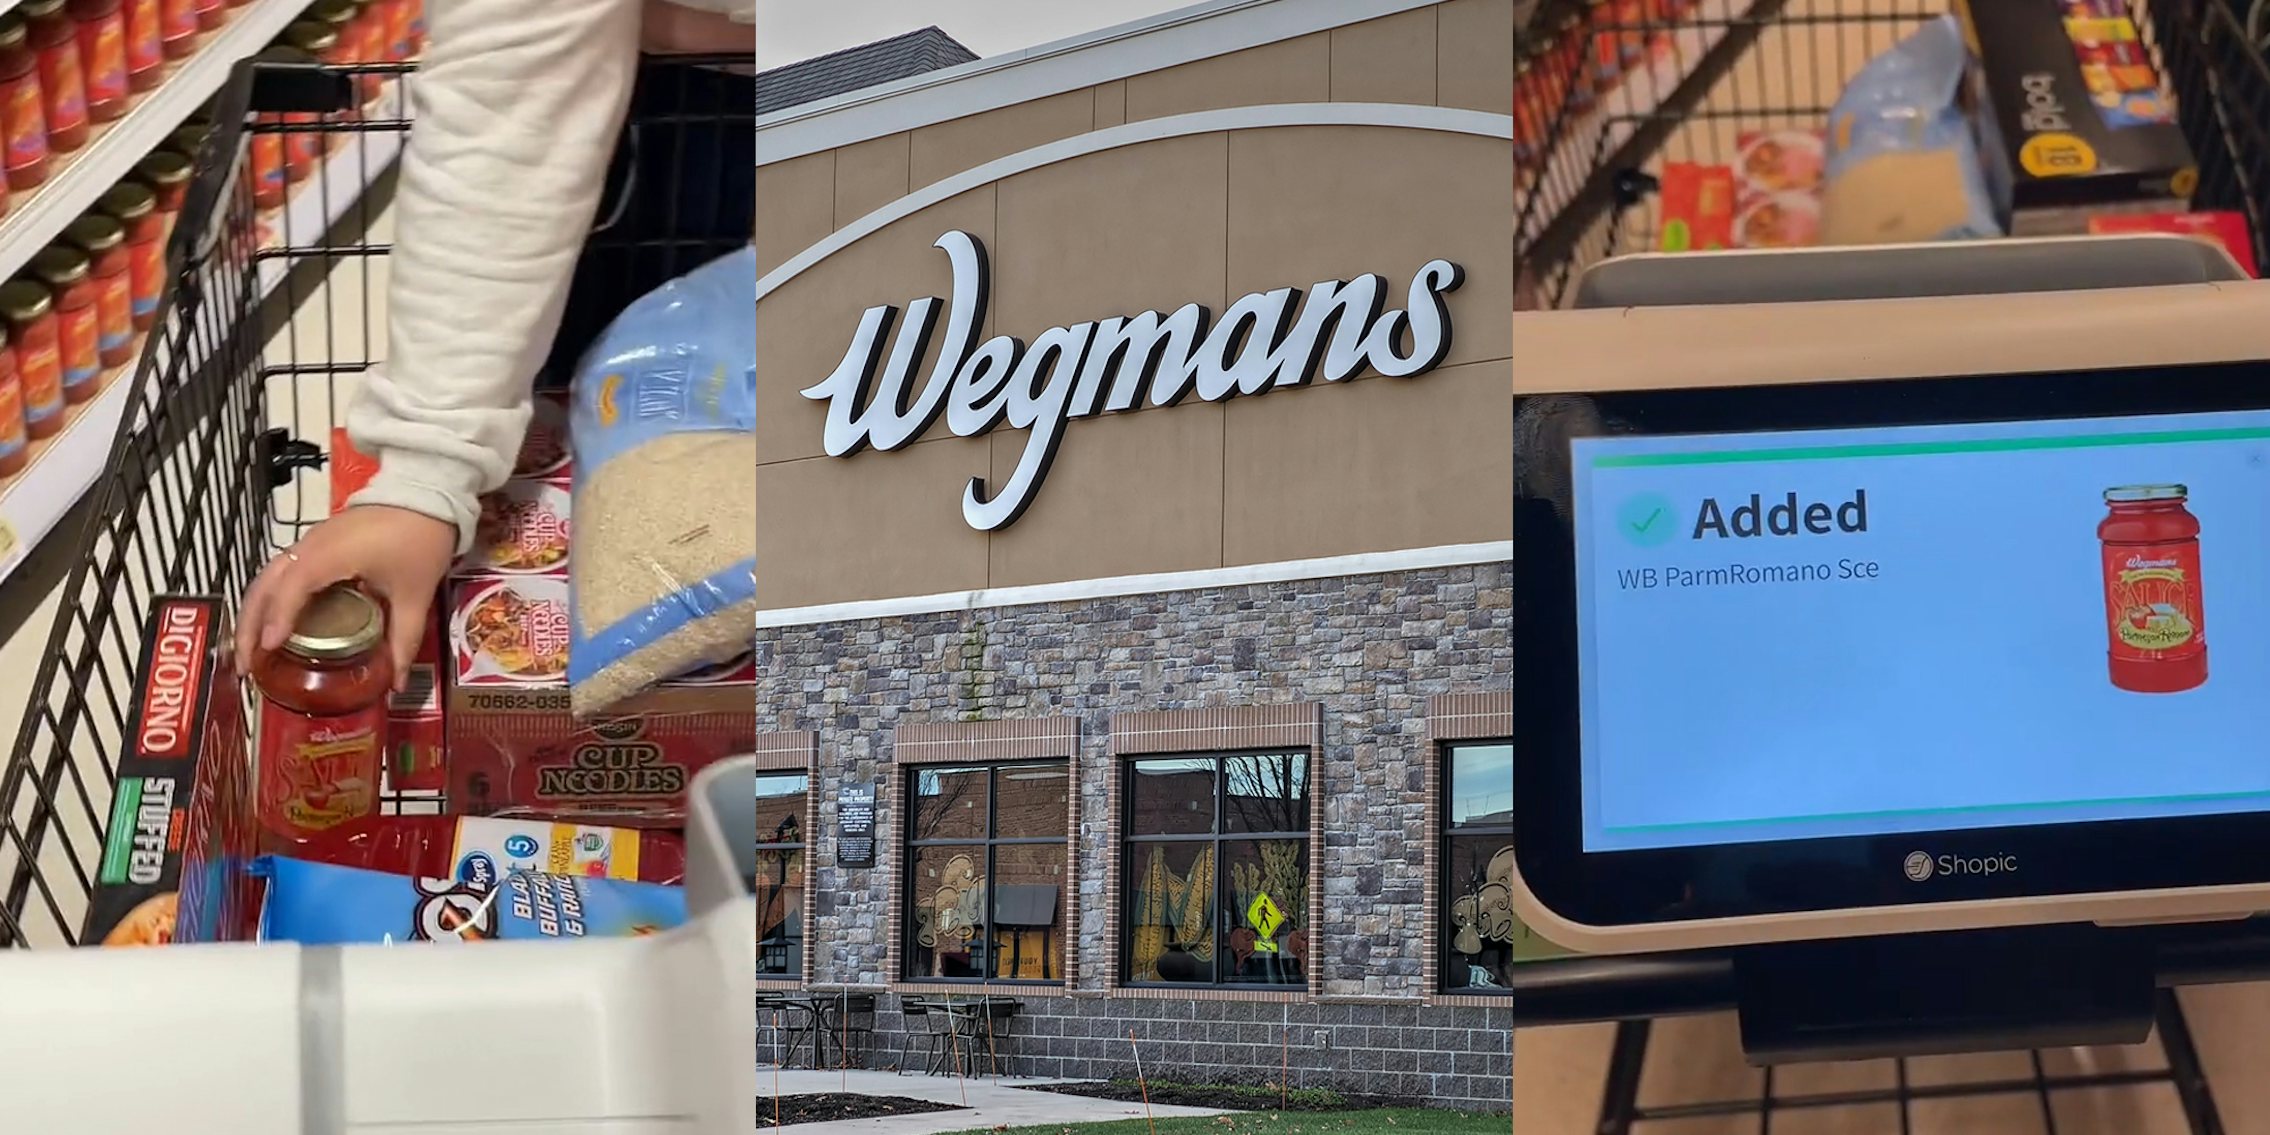 Wegmans customer placing sauce in cart (l) Wegmans building with sign (c) Wegmans smart cart screen displaying sauce added (r)